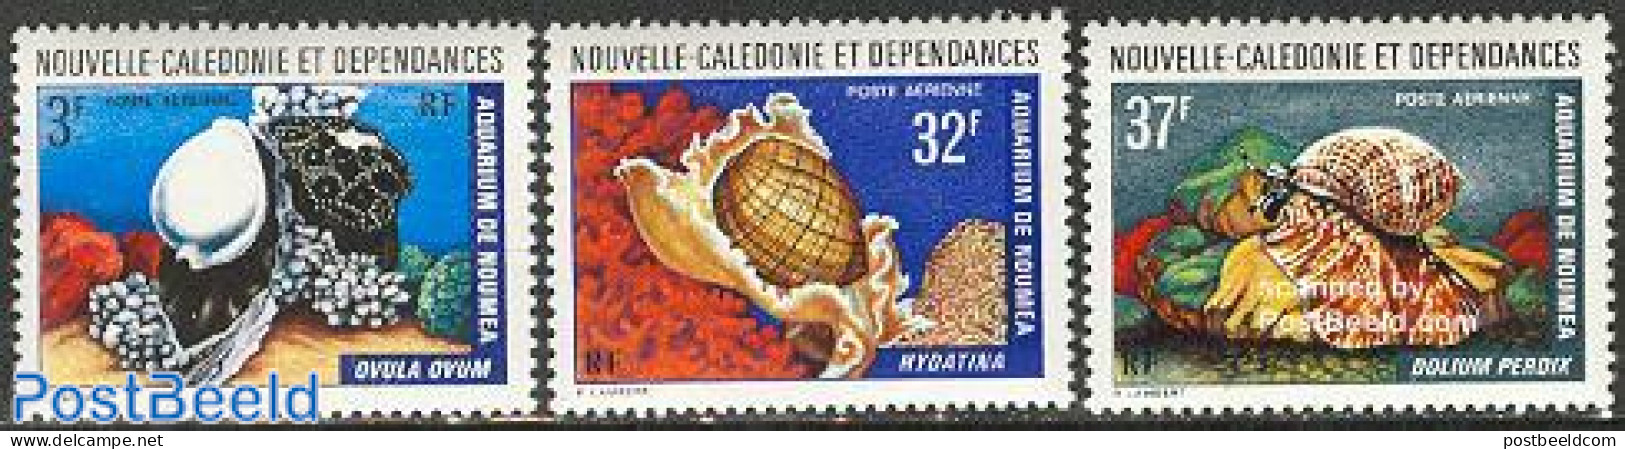 New Caledonia 1974 Noumea Aquarium 3v, Mint NH, Nature - Fish - Shells & Crustaceans - Nuevos